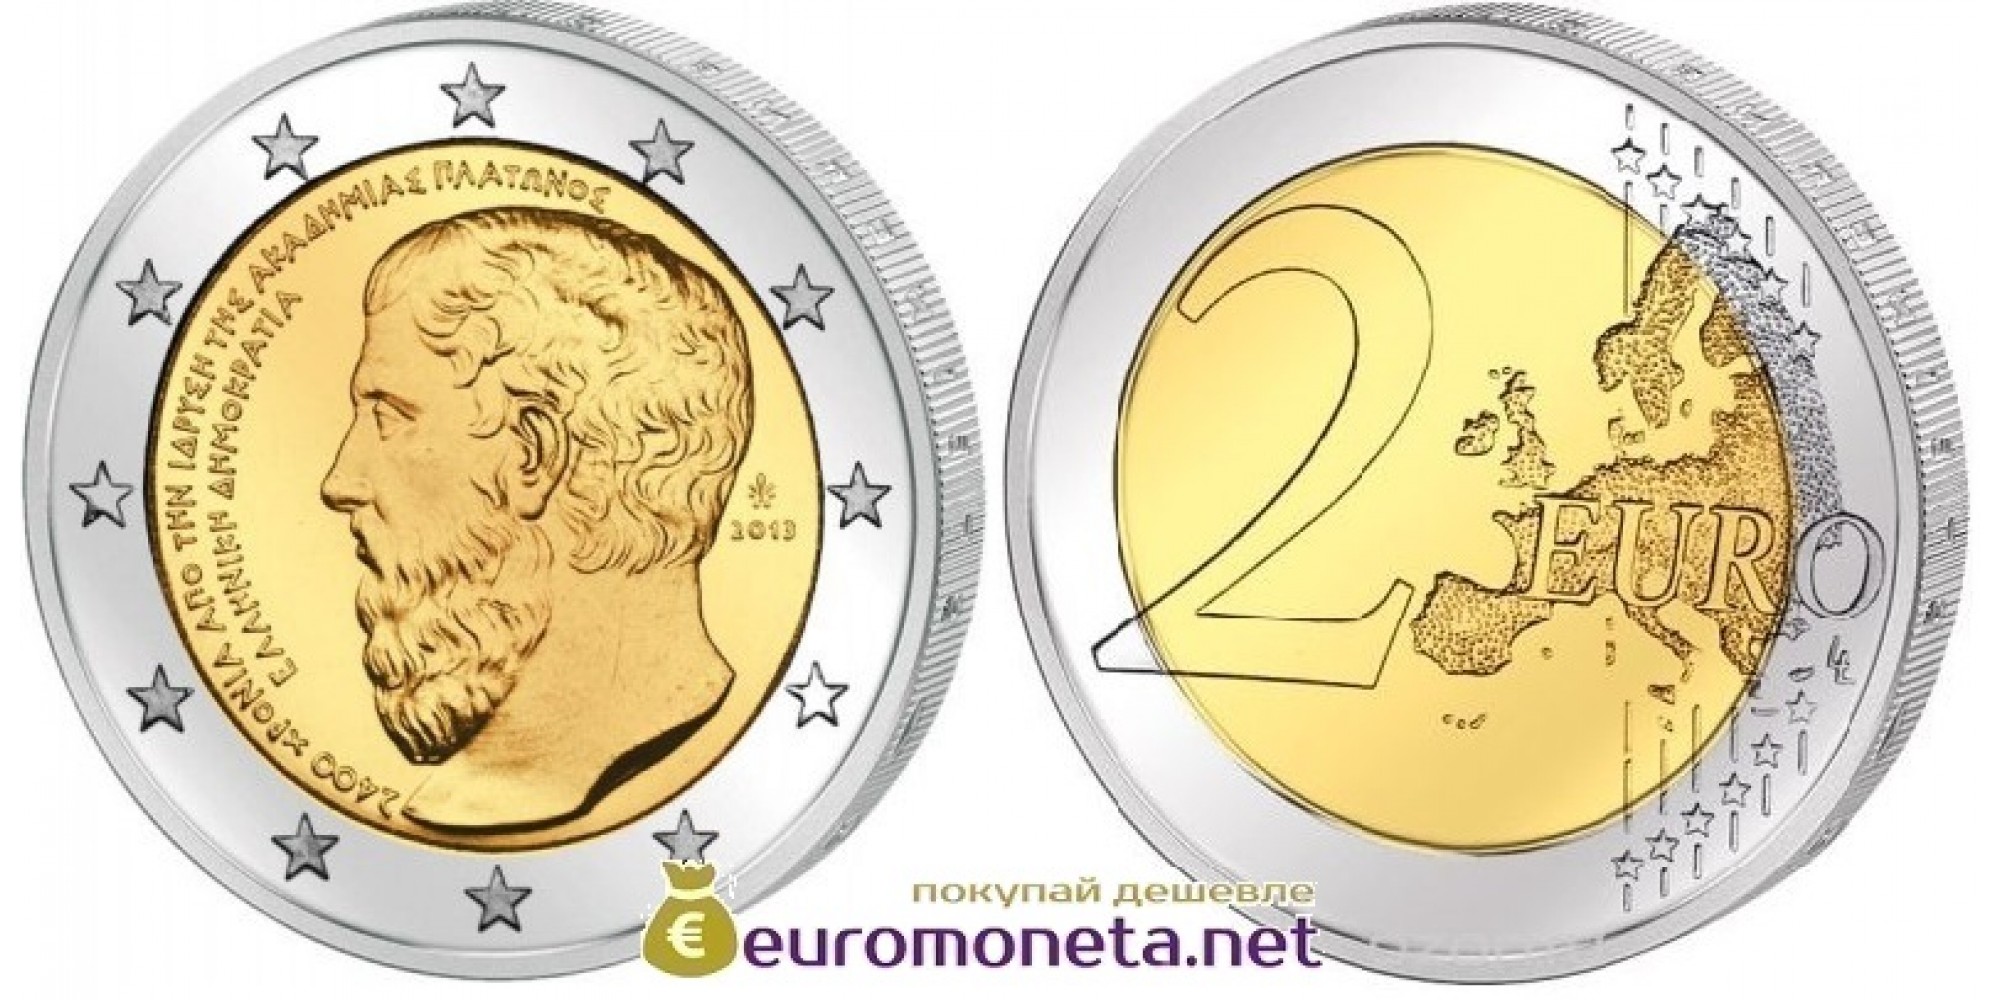 Греция 2 евро 2013 год 2400 лет с основания Платоновской Академии, биметалл АЦ из банковского ролла